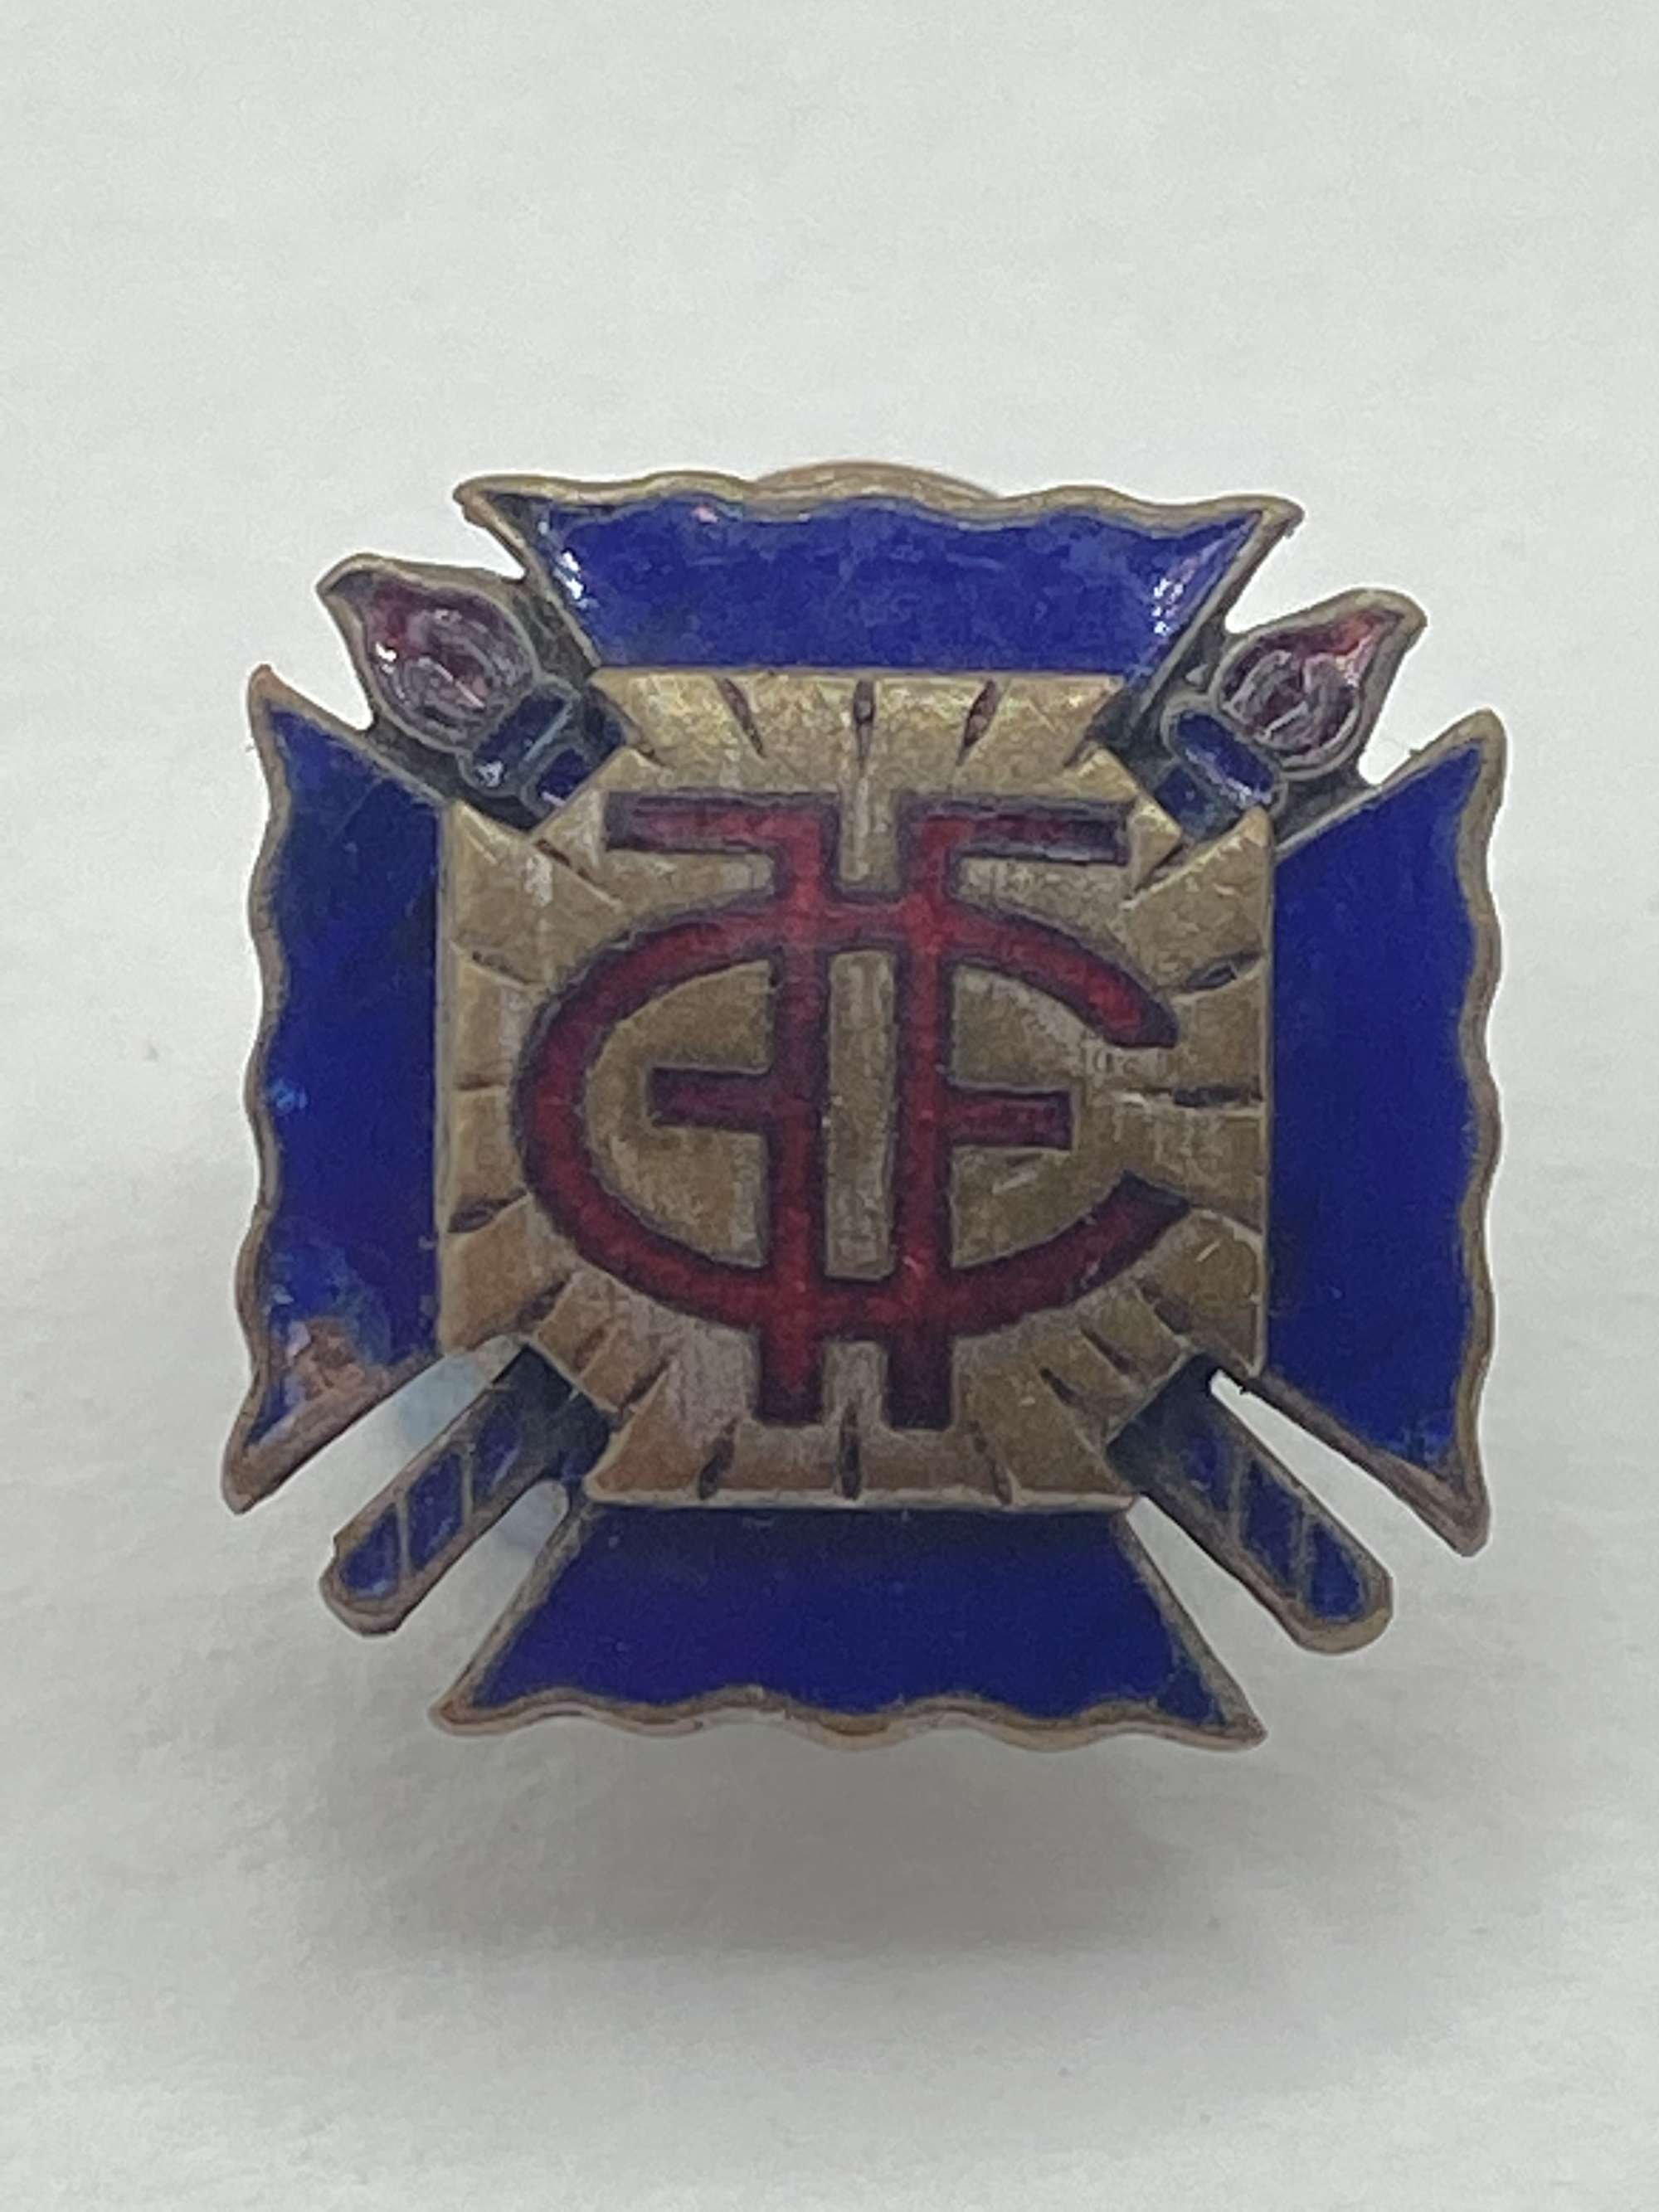 1930s French Facist's Croix-de-Feu Nationalist French League Badge